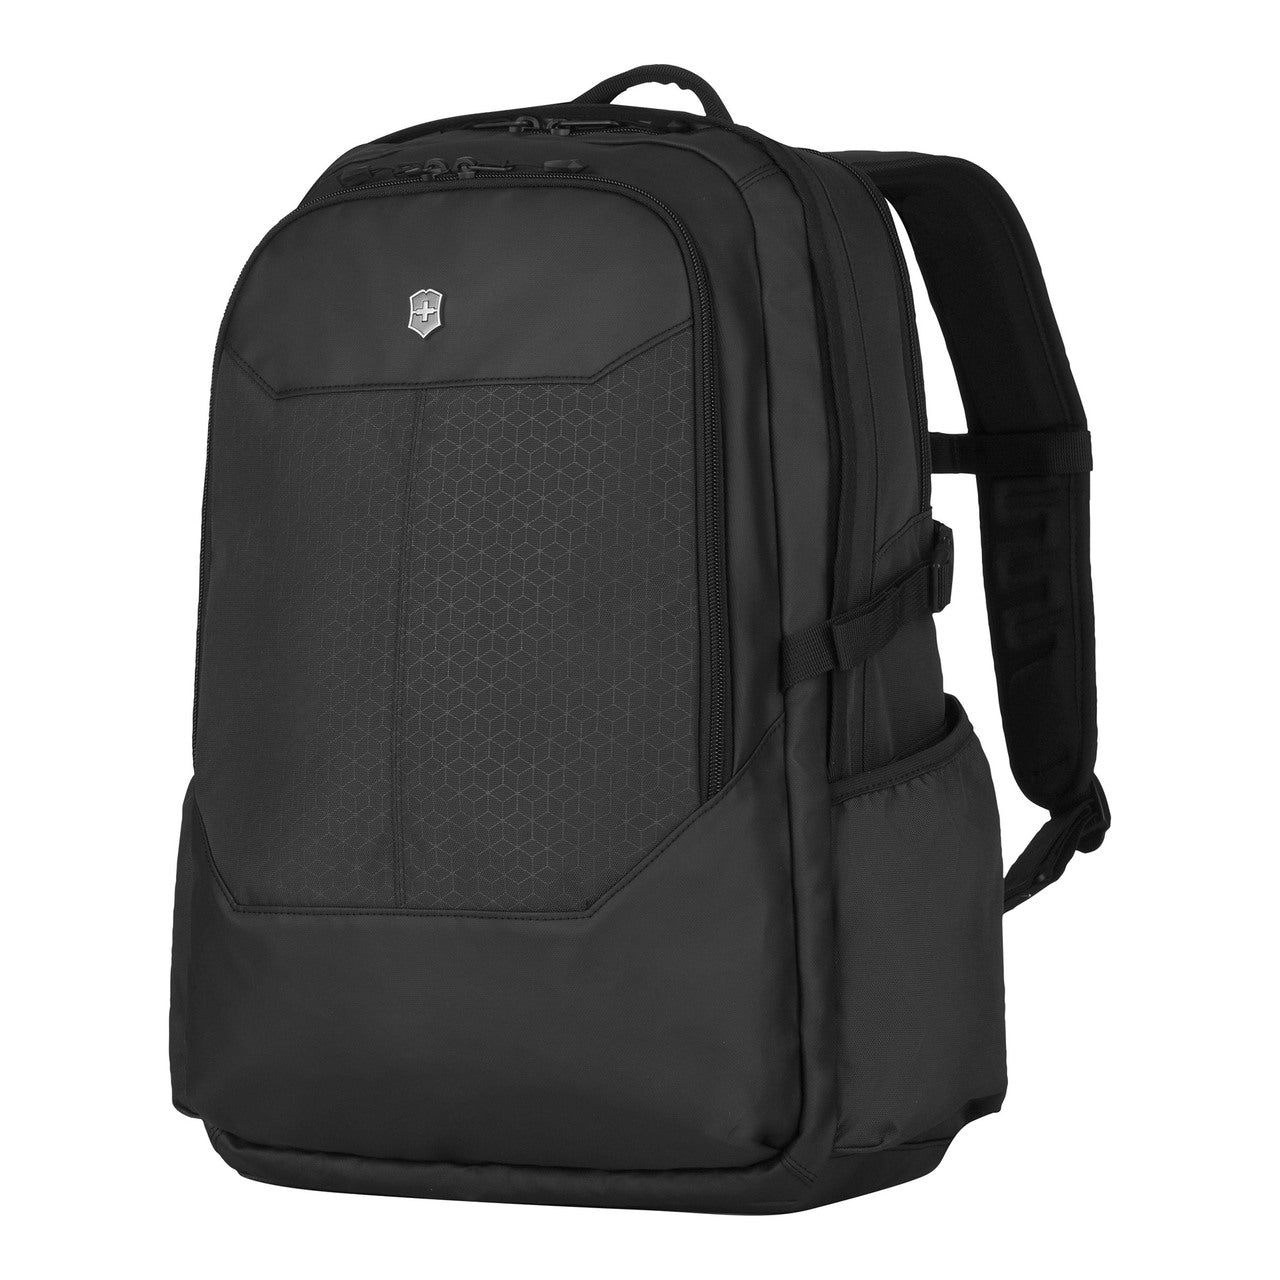 Altmont Original Deluxe 17" Laptop Backpack